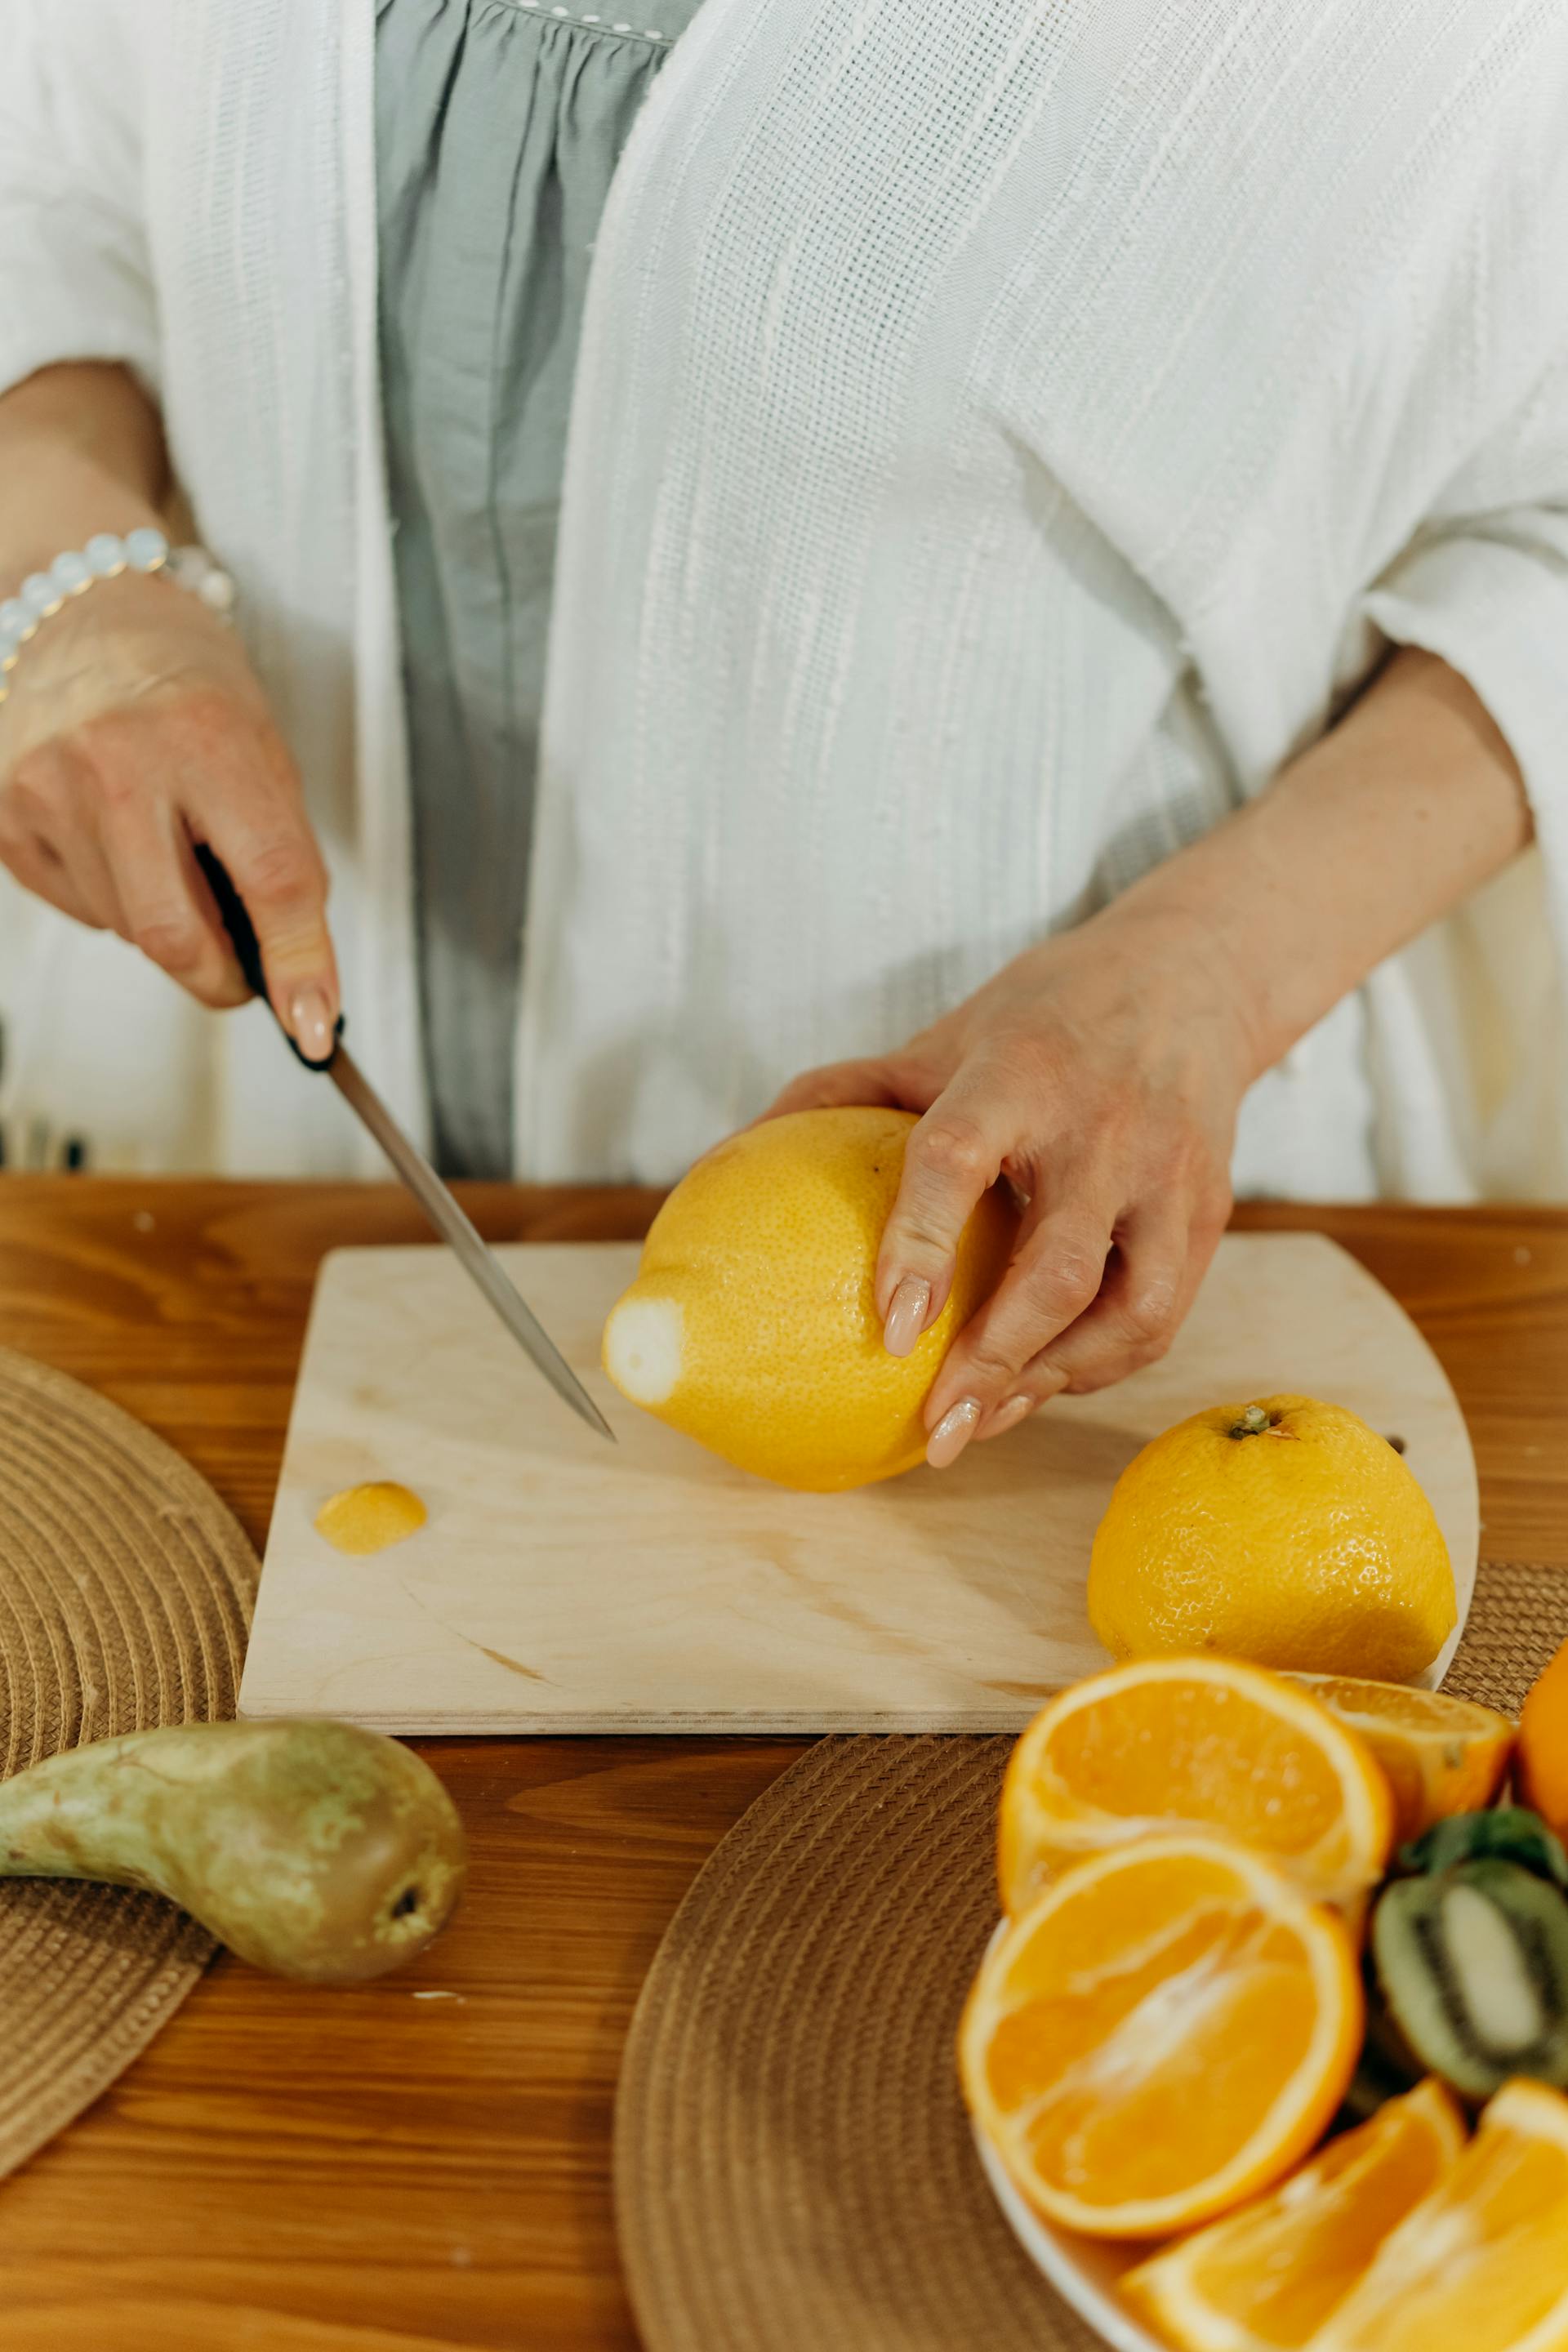 Una persona cortando naranjas | Fuente: Pexels